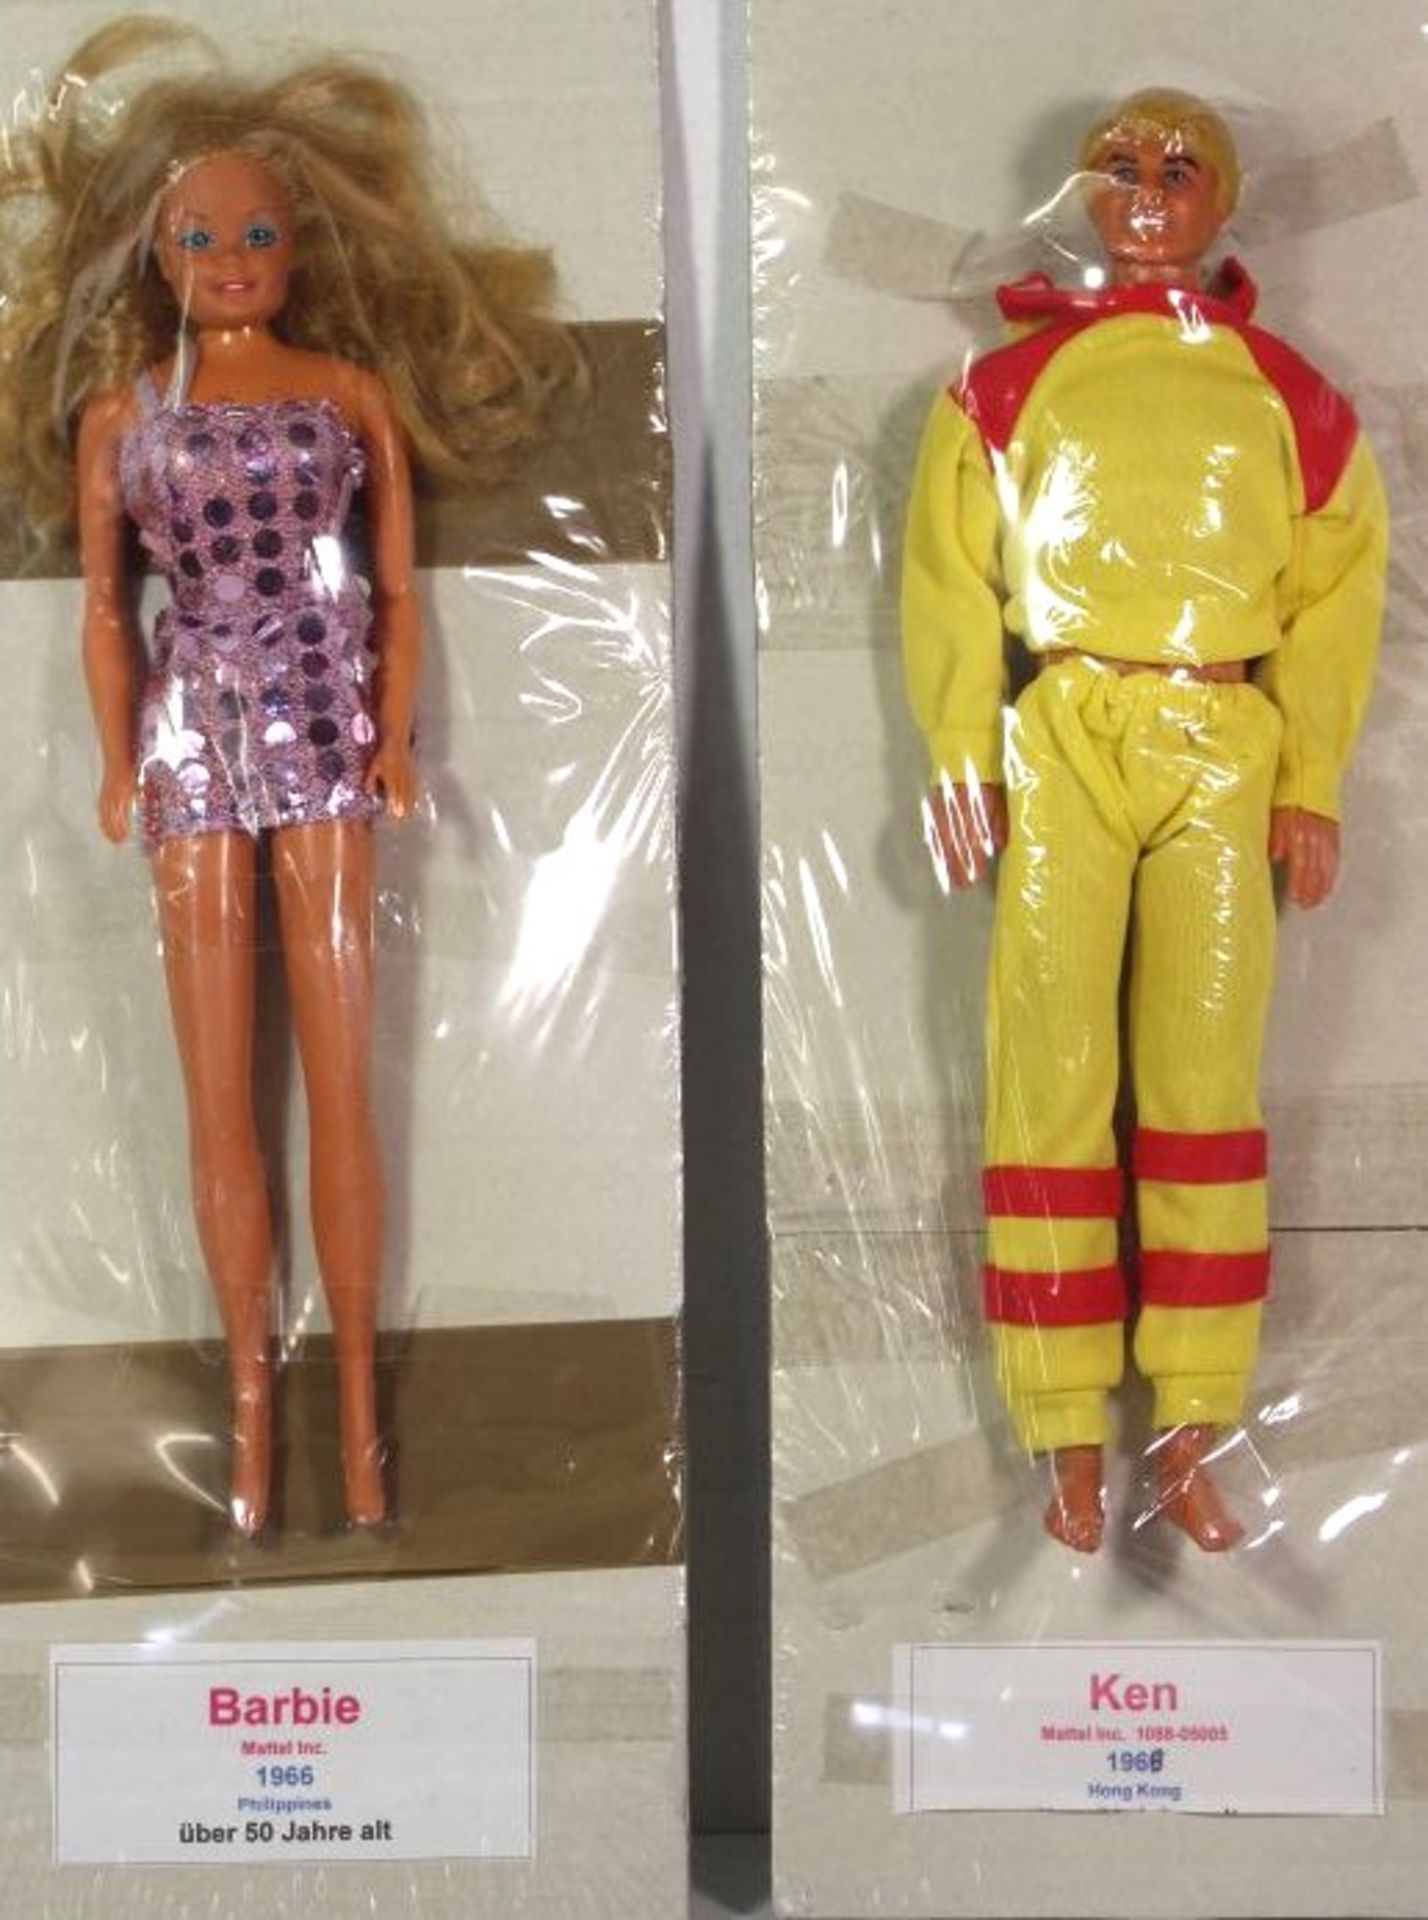 Barbie und Ken, Mattel, 1966/68, ca. H-29cm.- - -22.61 % buyer's premium on the hammer priceVAT - Bild 2 aus 2